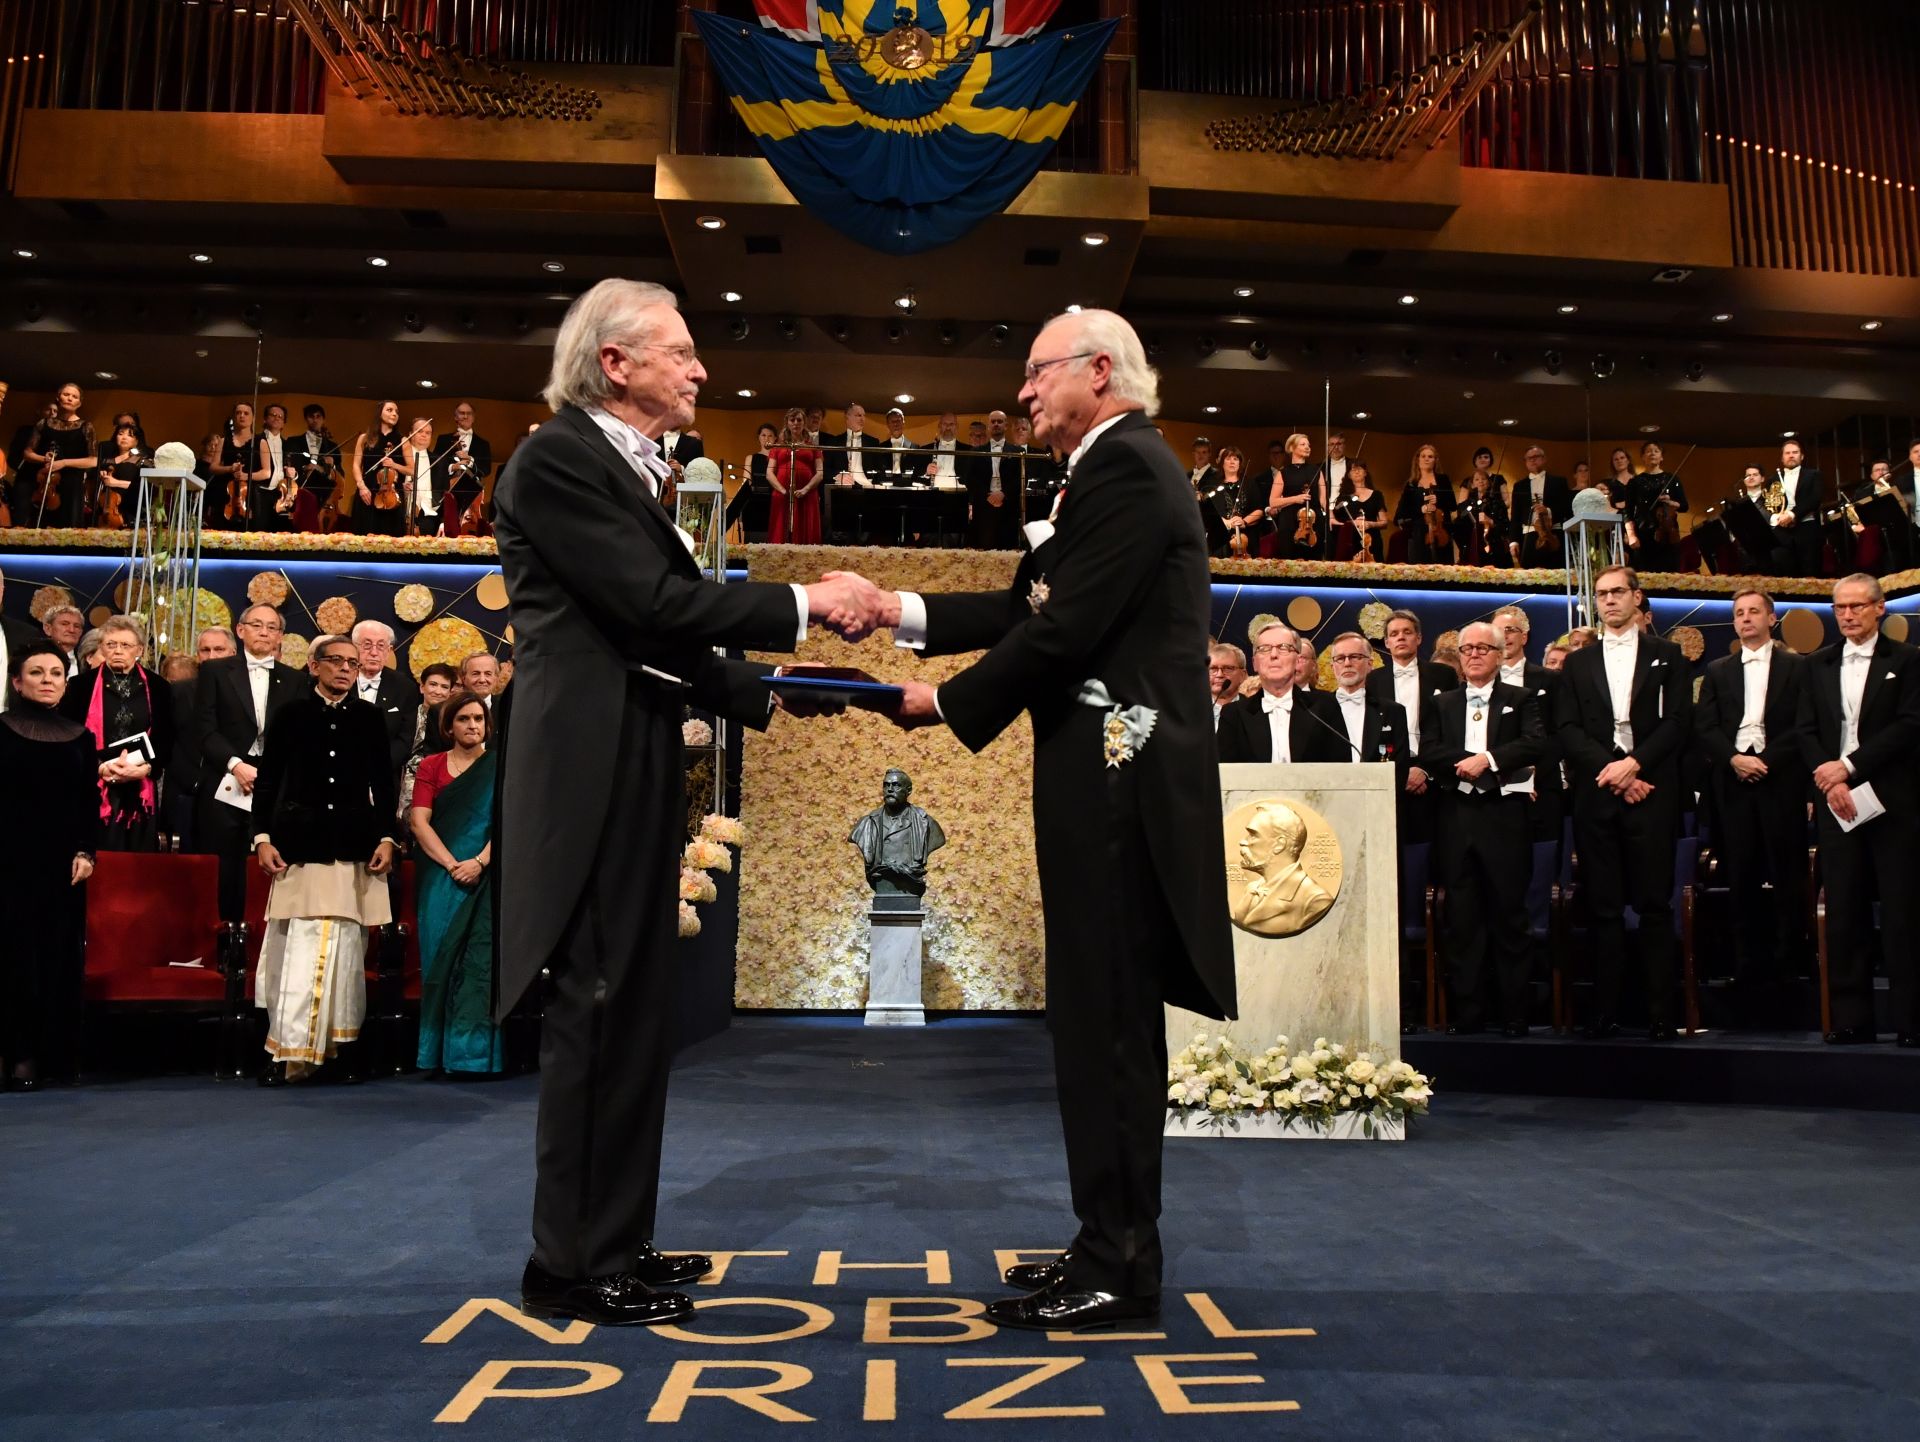 Кралят на Швеция връчва Нобеловата награда на Петер Ханке, докато отвън протестират срещу присъждането му на приза